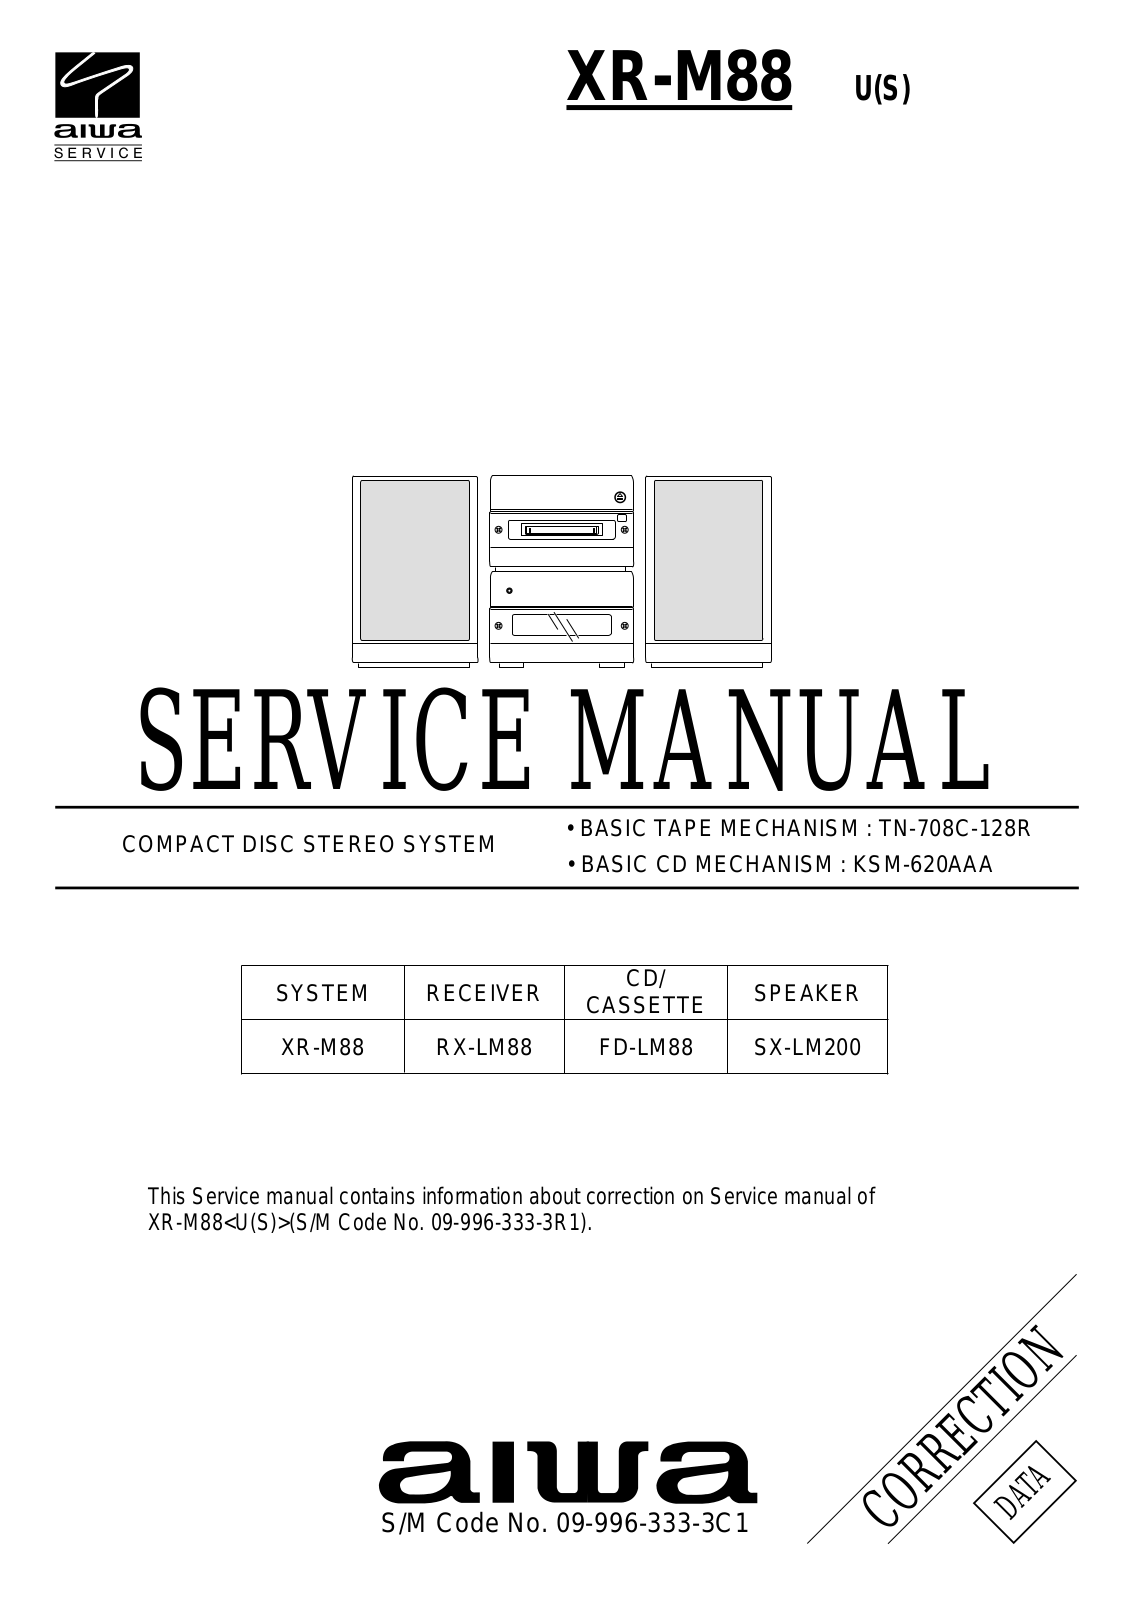 Aiwa XR-M88 U Service Manual